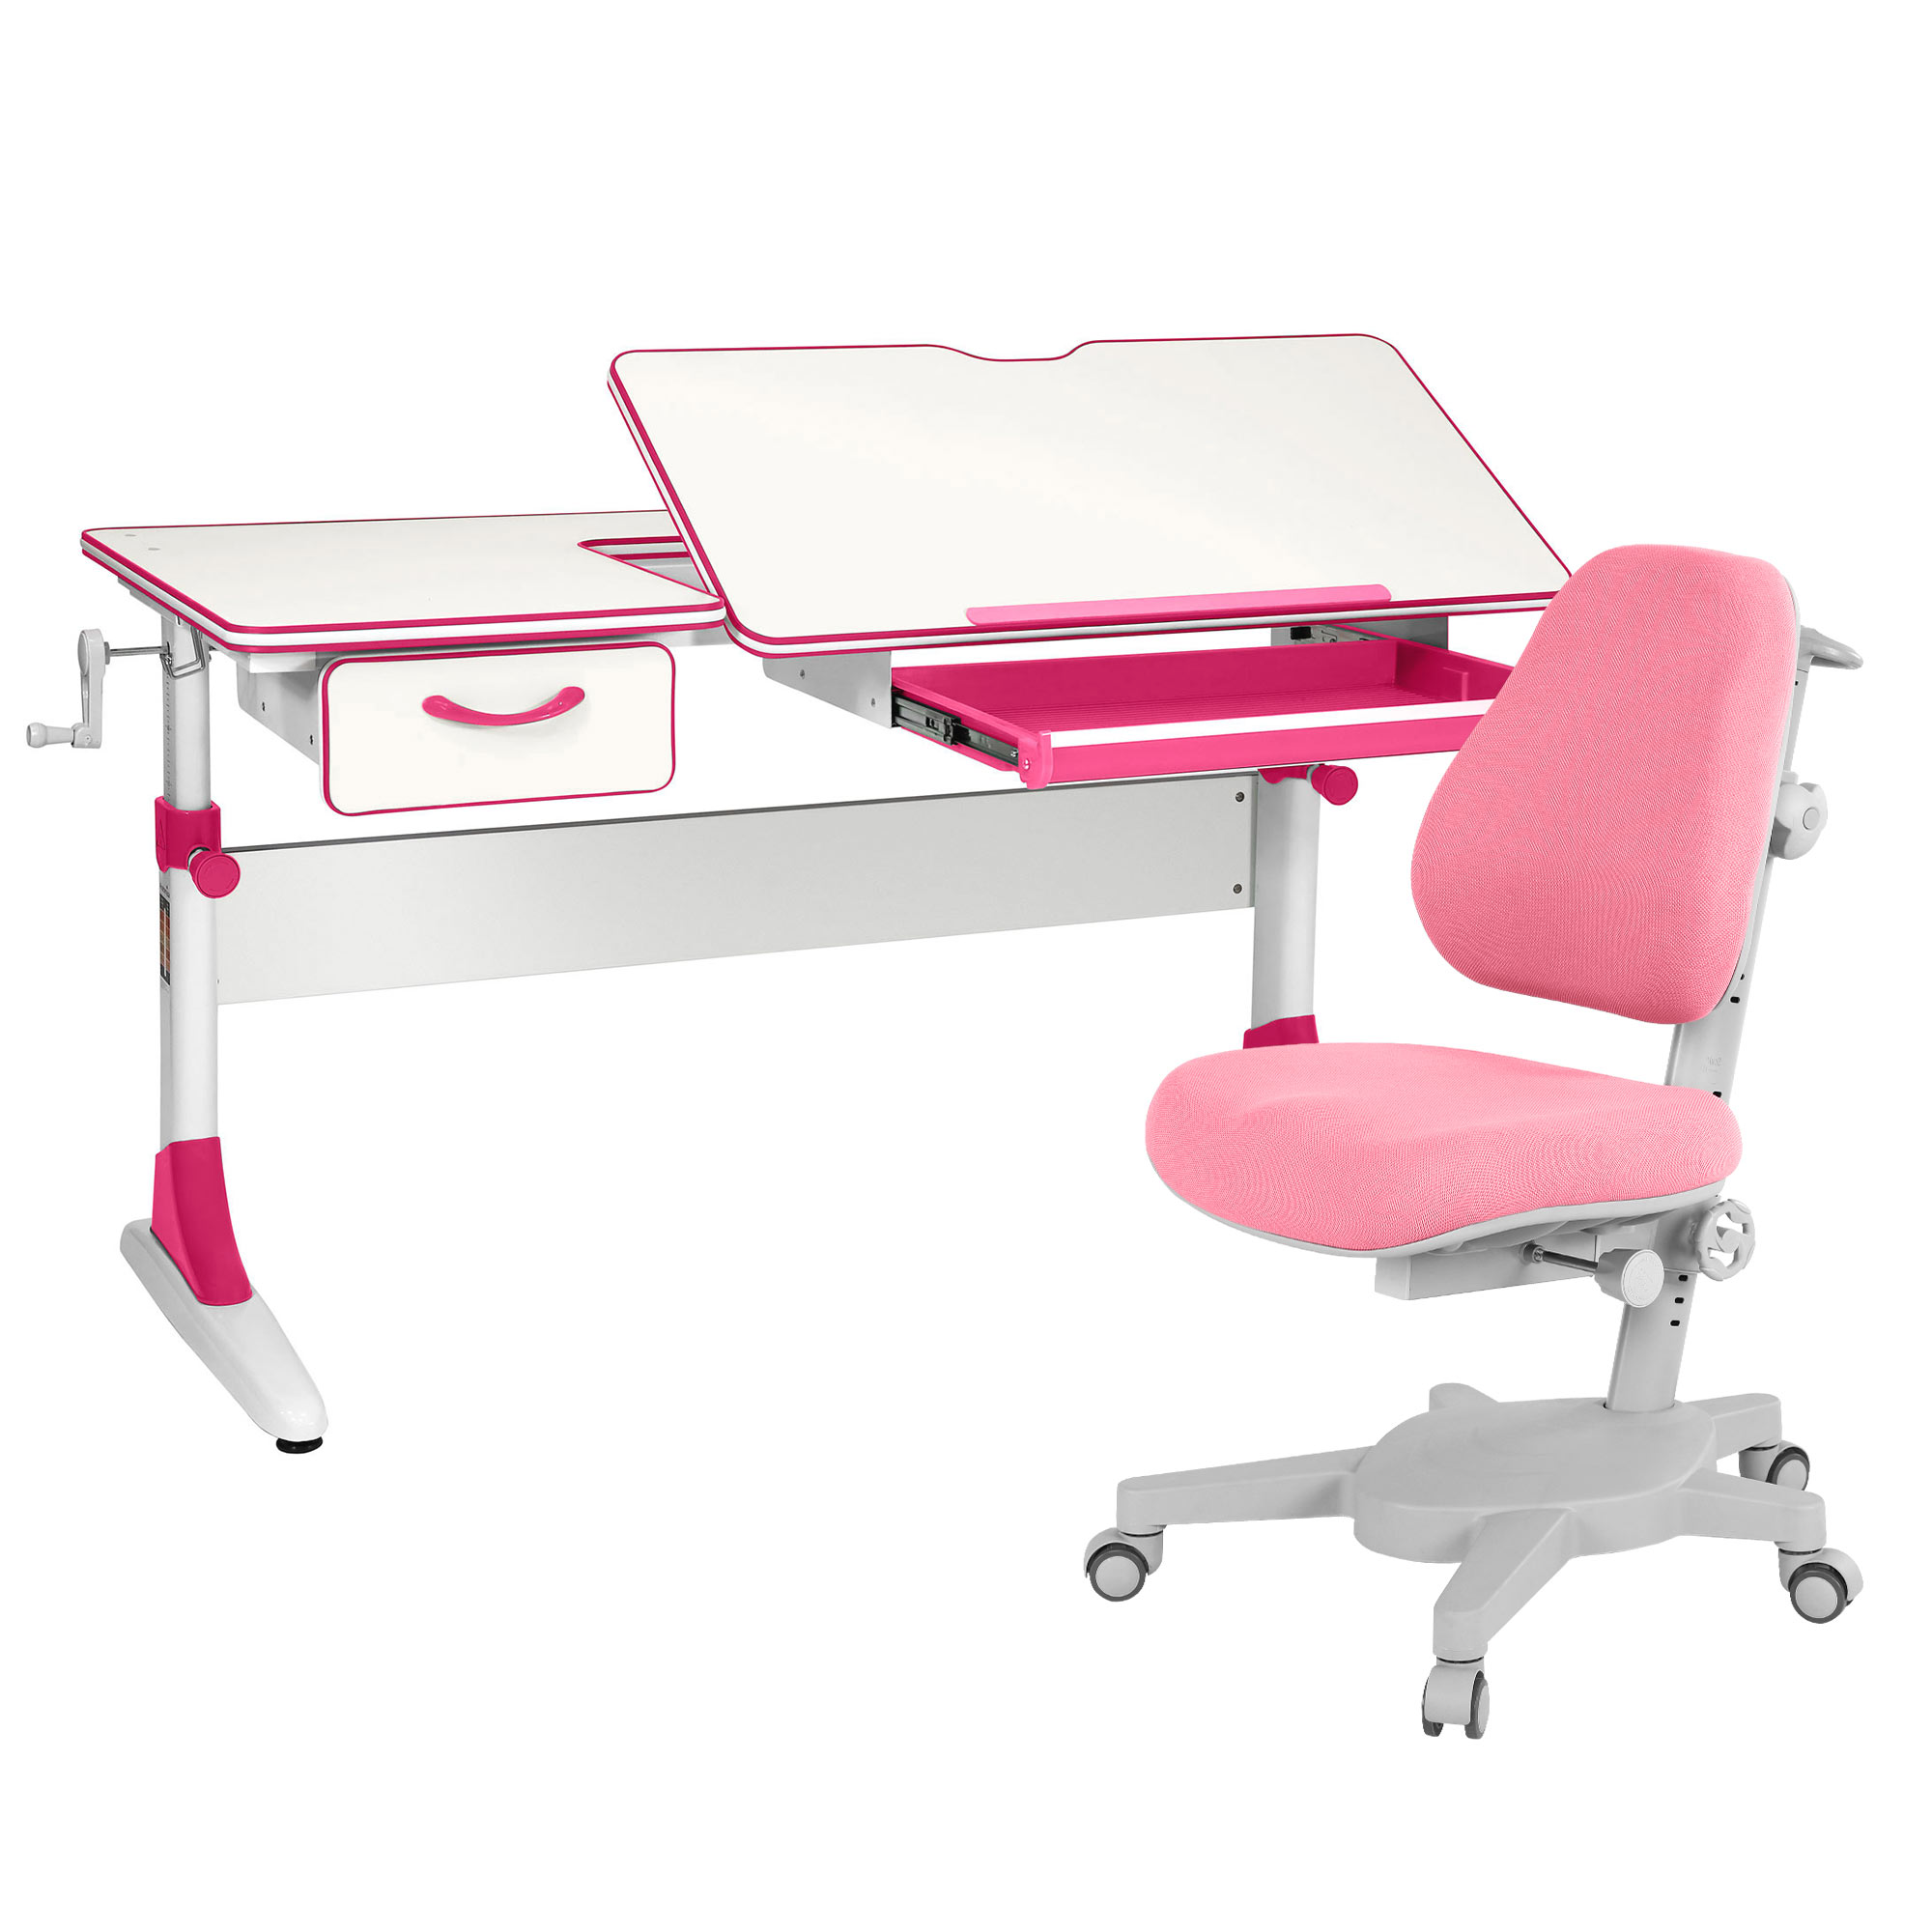 Комплект парта Anatomica Study-120 белый/розовый с розовым креслом Armata комплект парта anatomica study 120 lux белый розовый с розовым креслом armata duos